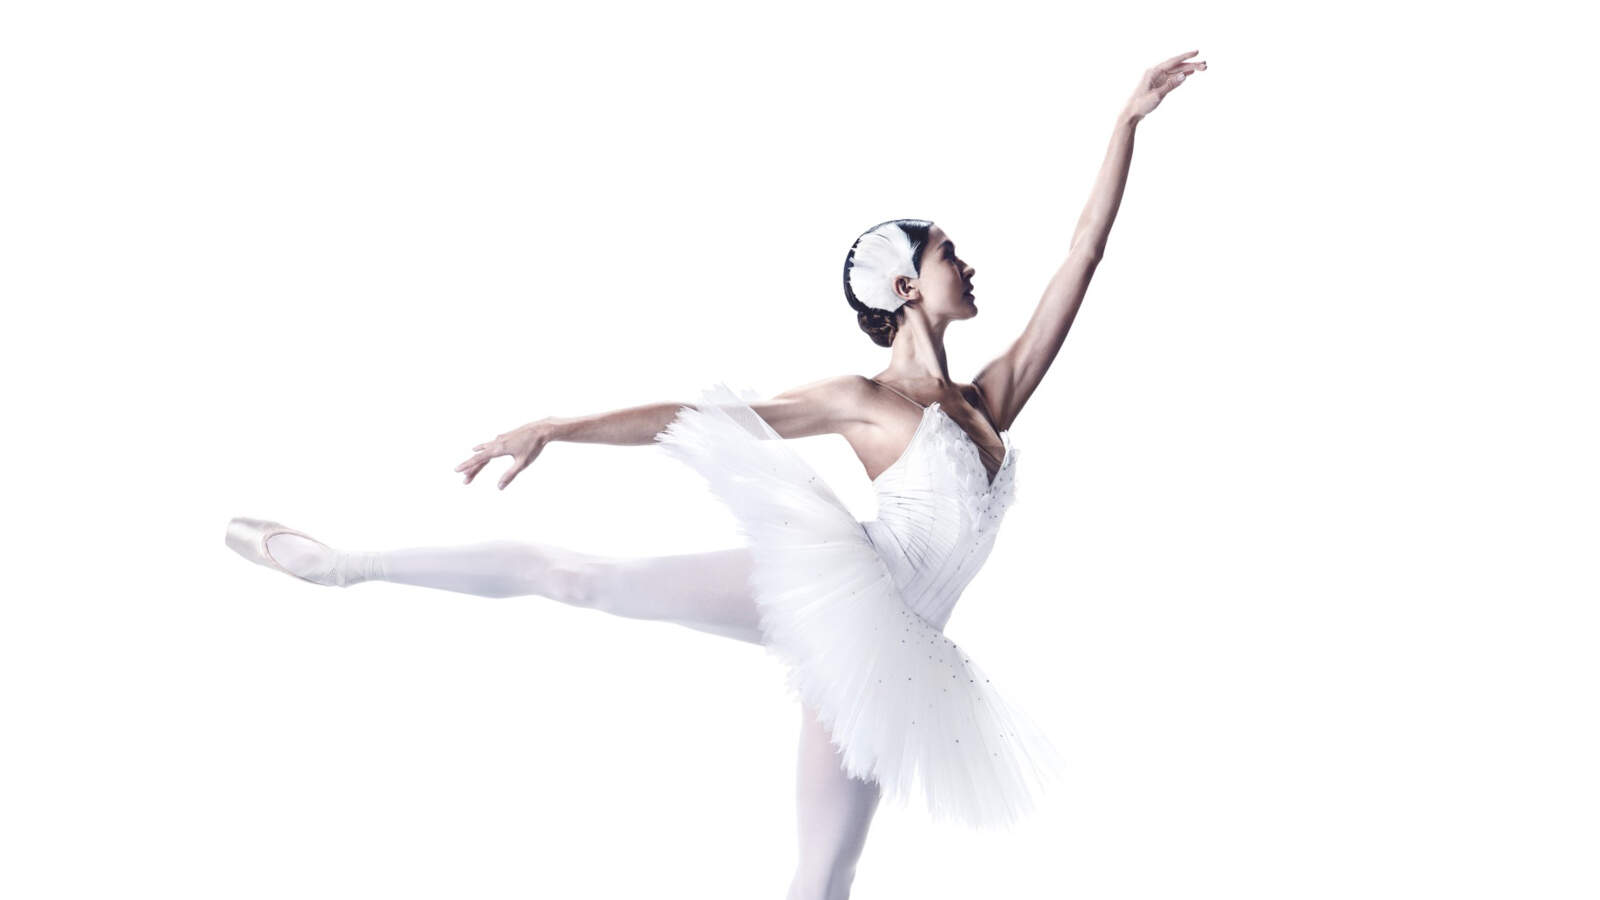 En ballerina i vit tutu balanserar på ena tån med en arm sträckt fram och ett ben utsträckt bakom sig.